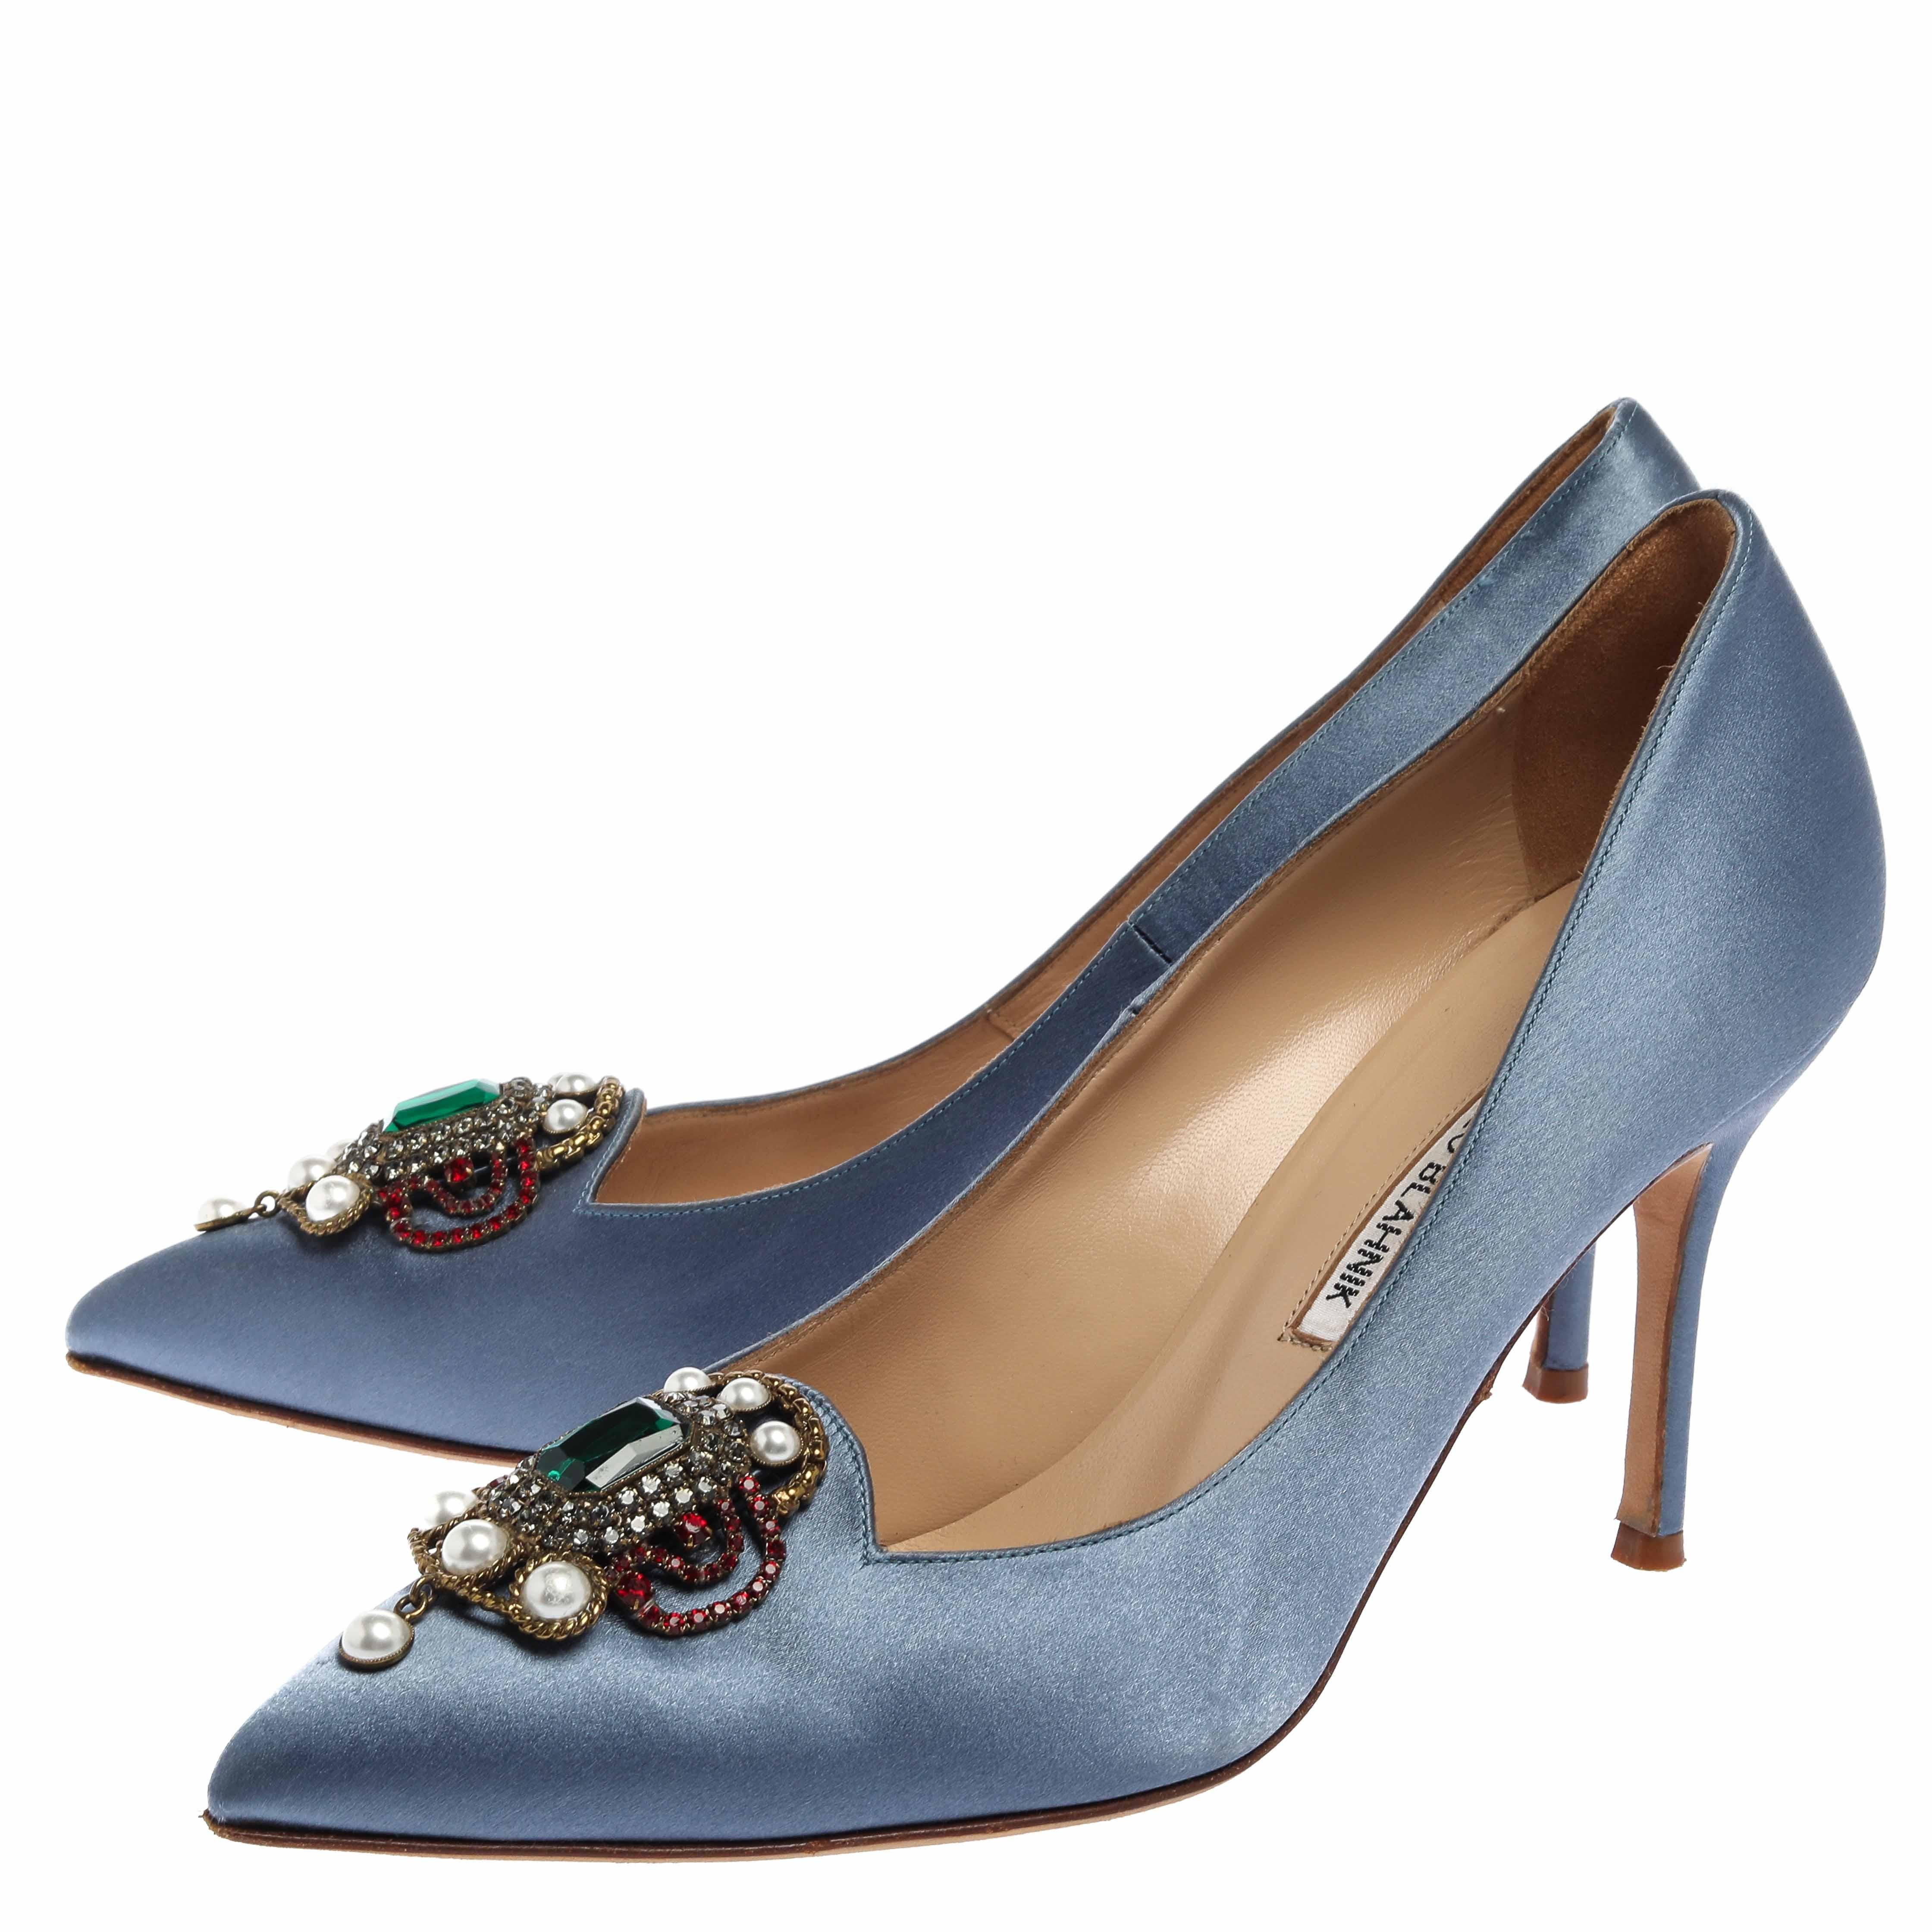 light blue satin heels